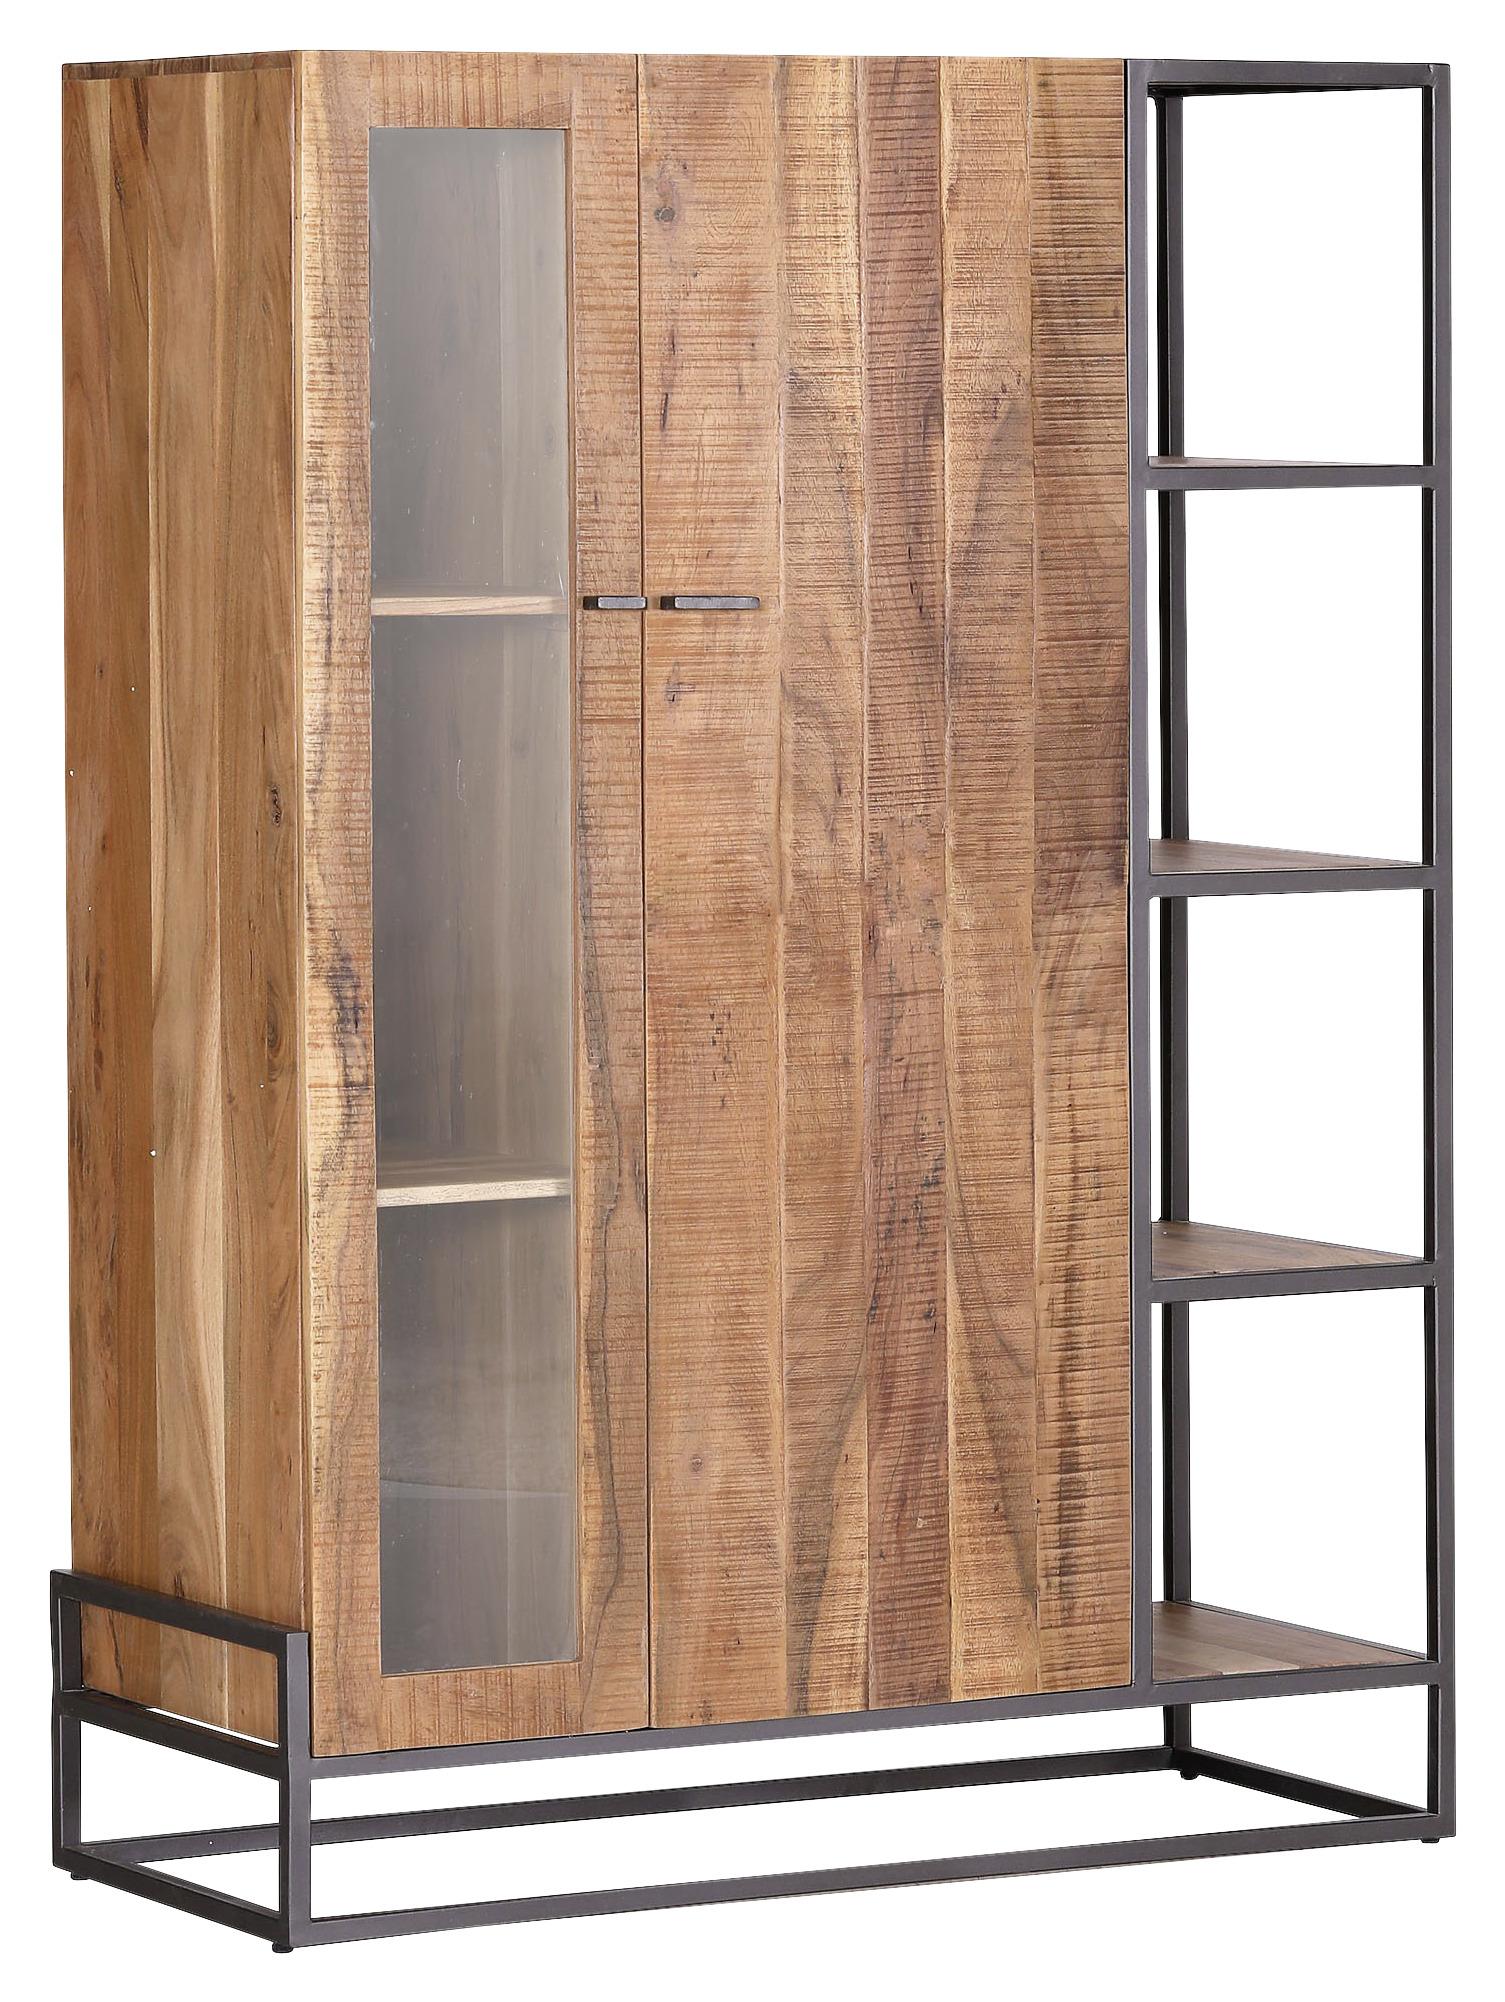 Highboard in Braun/Anthrazit - Anthrazit/Braun, MODERN, Glas/Holz (108/150/48cm) - Premium Living